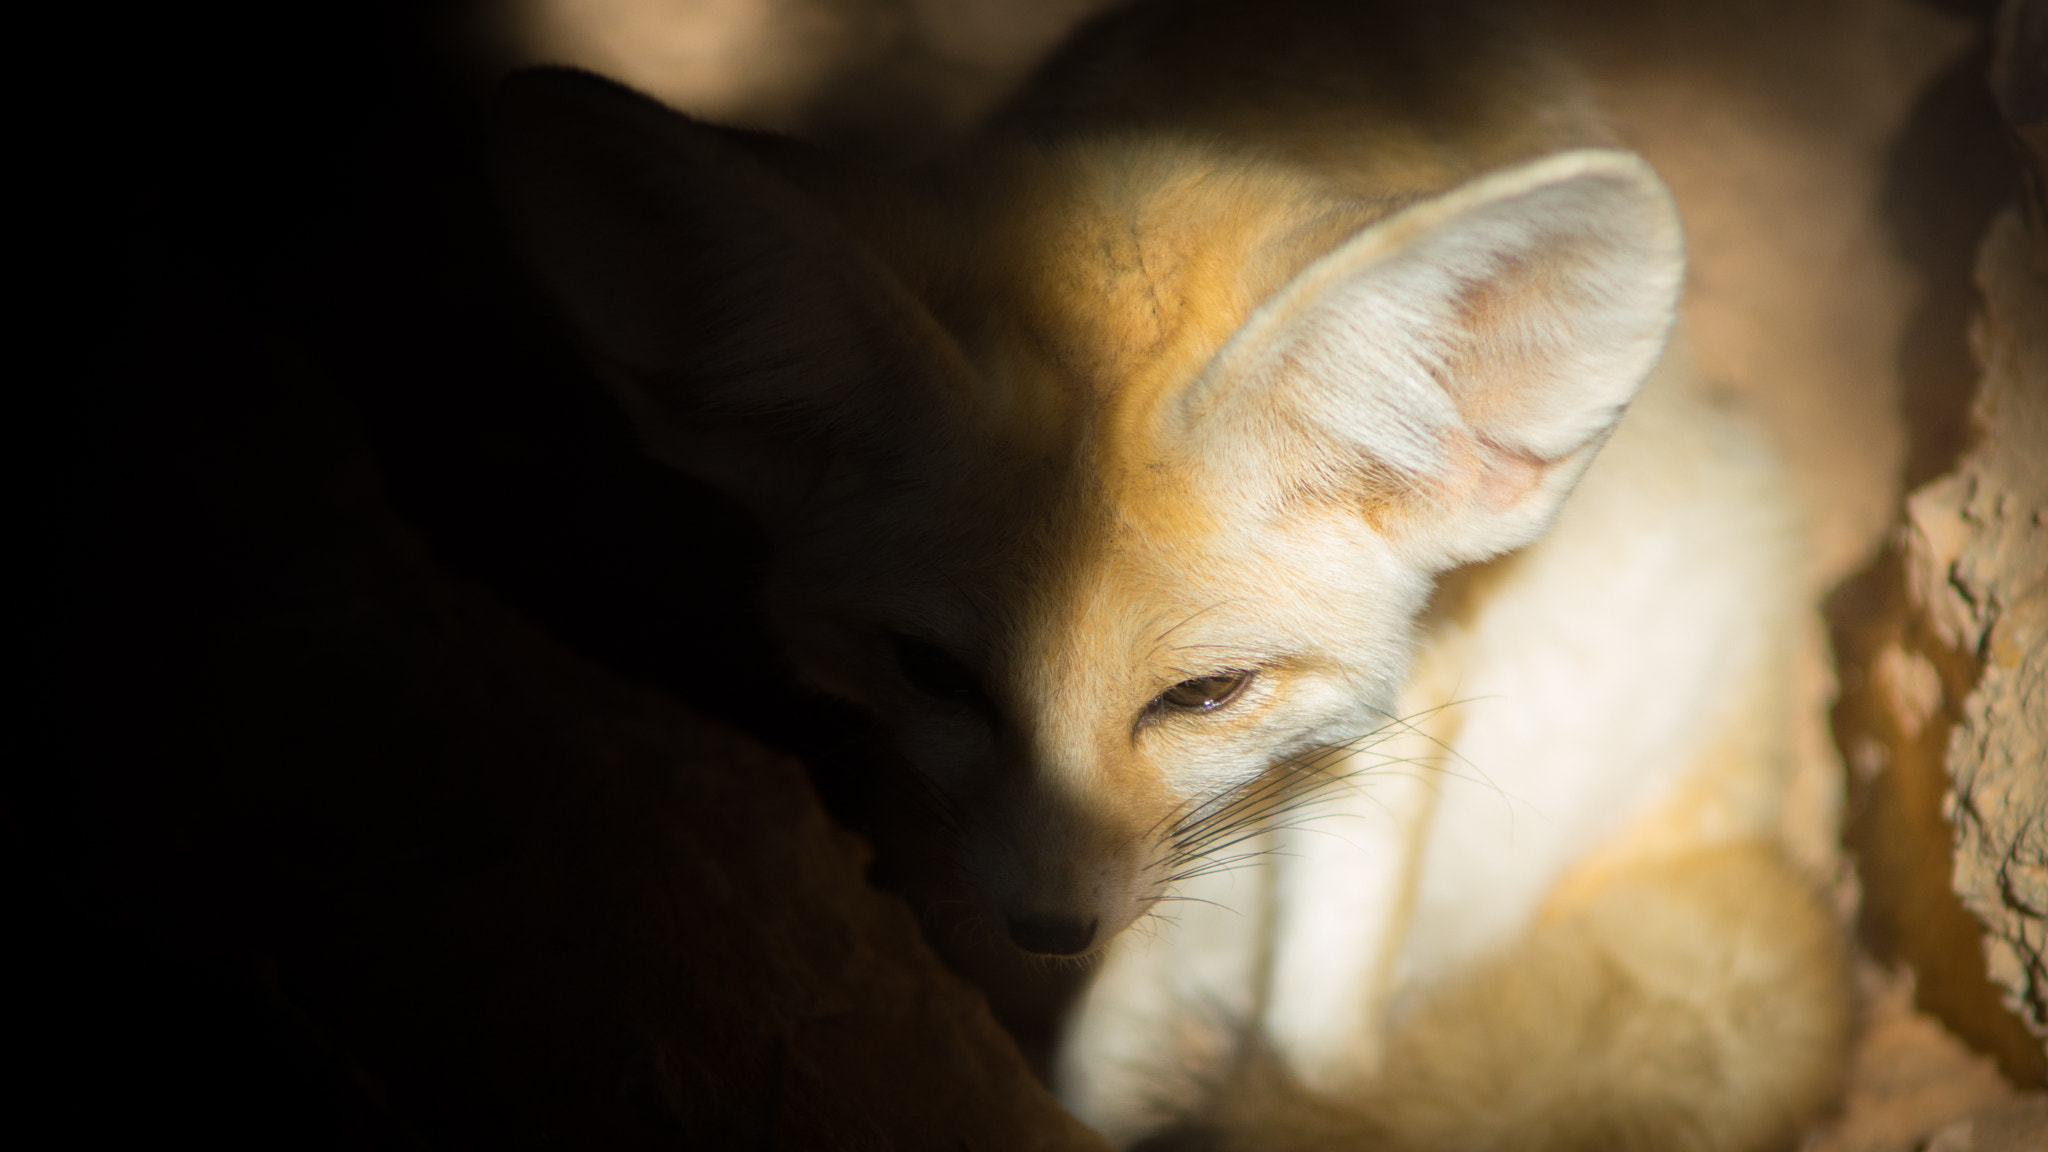 Sony SLT-A77 sample photo. Sahara's fox photography